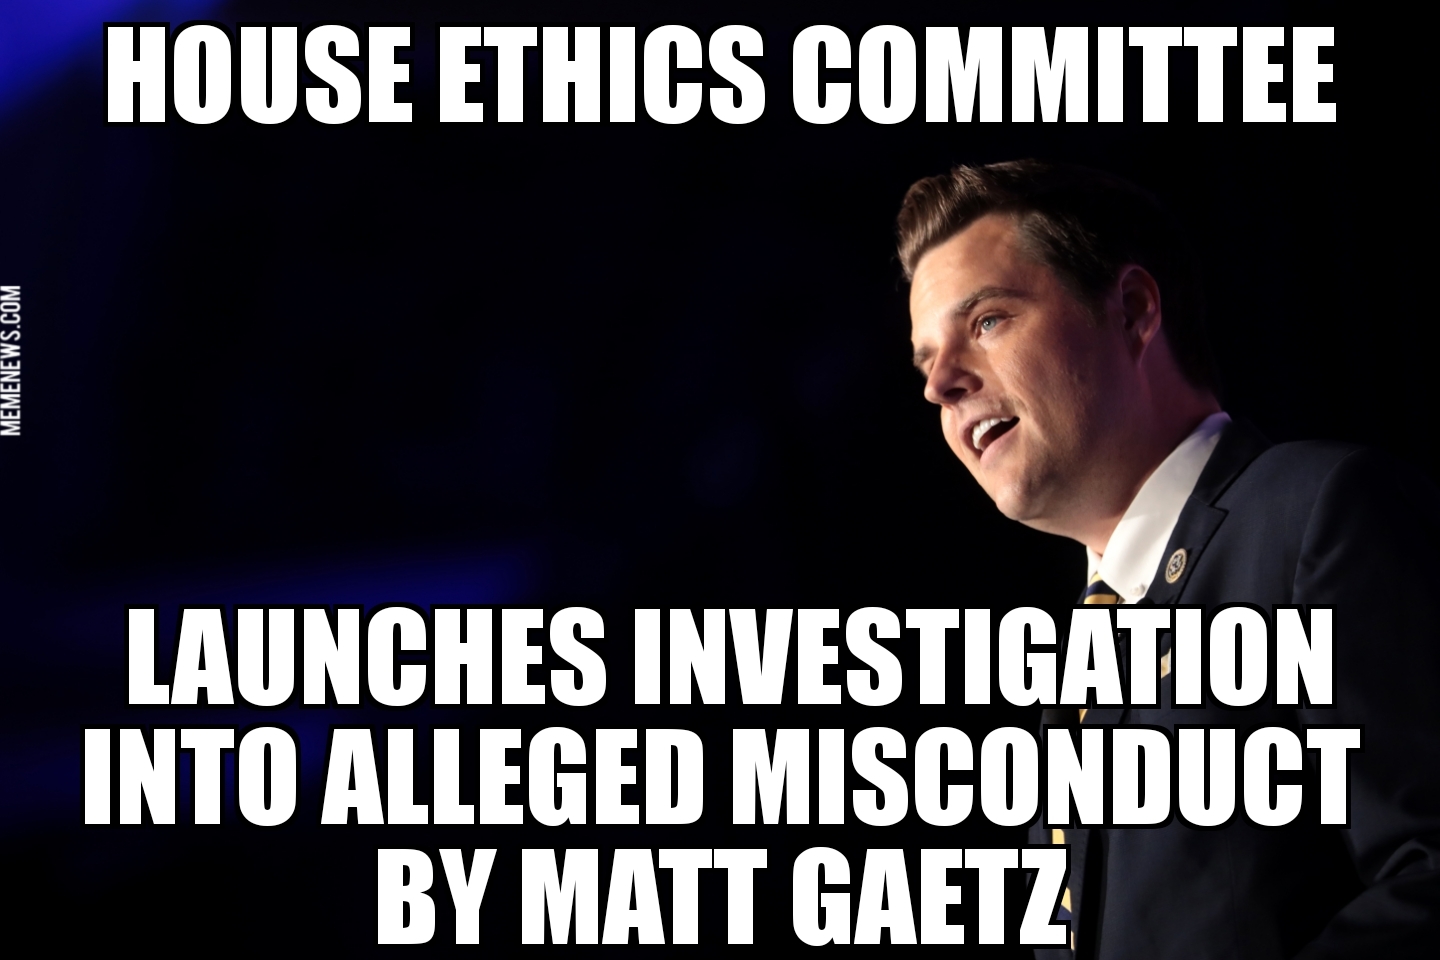 House Ethics Committee investigating Matt Gaetz